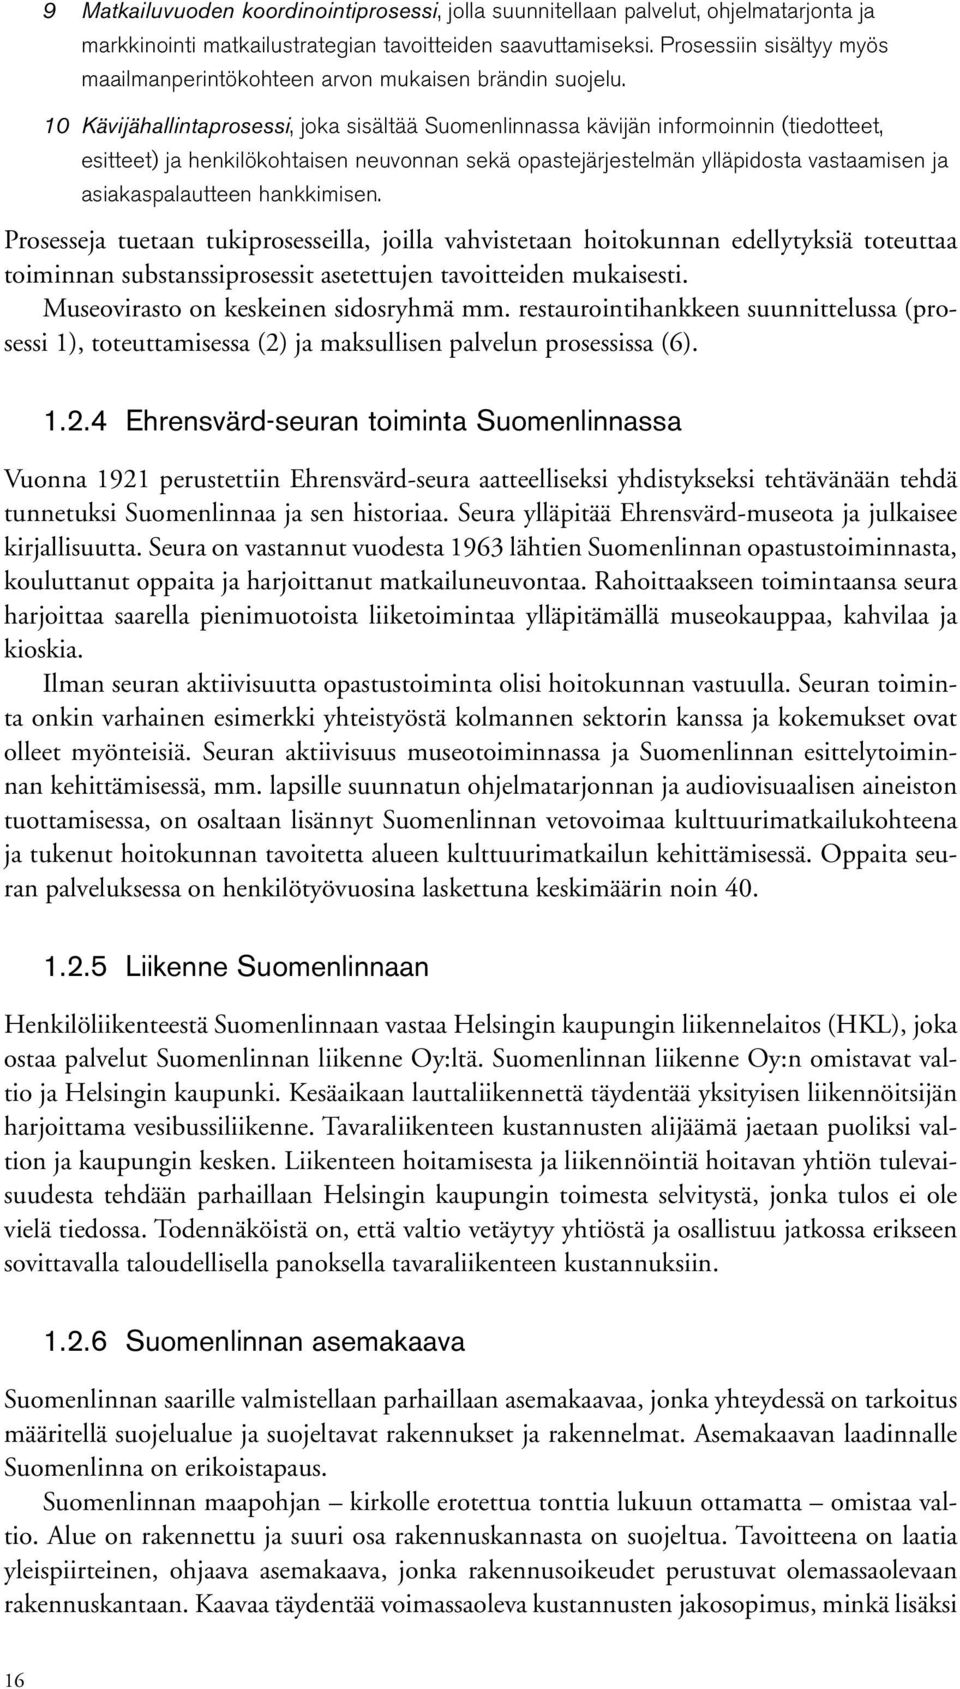 10 Kävijähallintaprosessi, joka sisältää Suomenlinnassa kävijän informoinnin (tiedotteet, esitteet) ja henkilökohtaisen neuvonnan sekä opastejärjestelmän ylläpidosta vastaamisen ja asiakaspalautteen